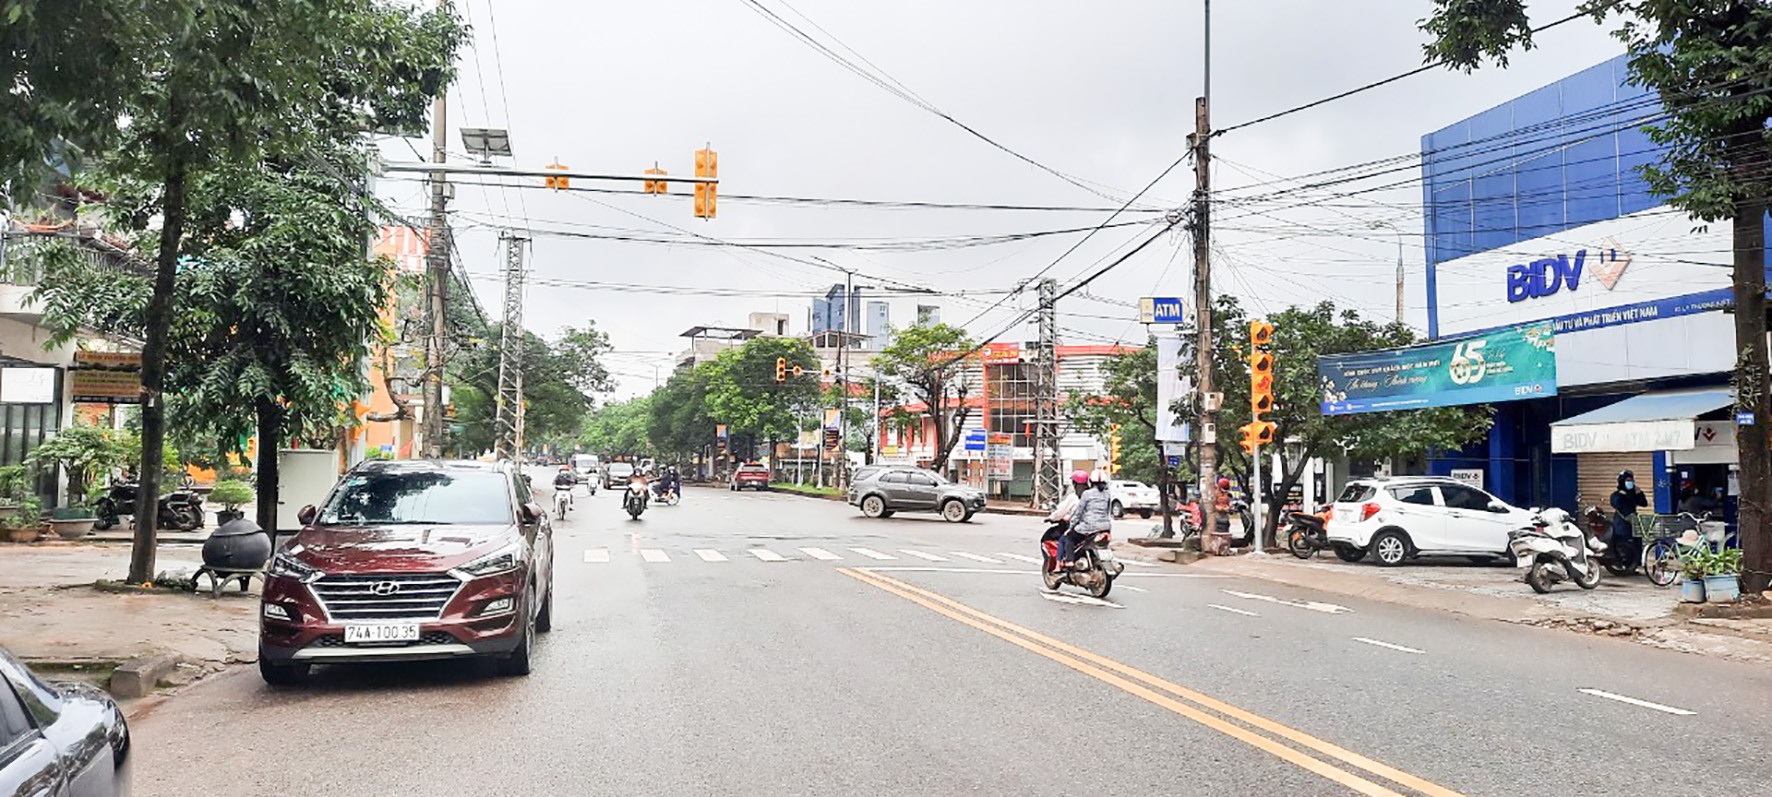 Hệ thống đèn tín hiệu giao thông tại điểm giao cắt Lê Lợi - Lý Thường Kiệt, thành phố Đông Hà - Ảnh: Lê Minh